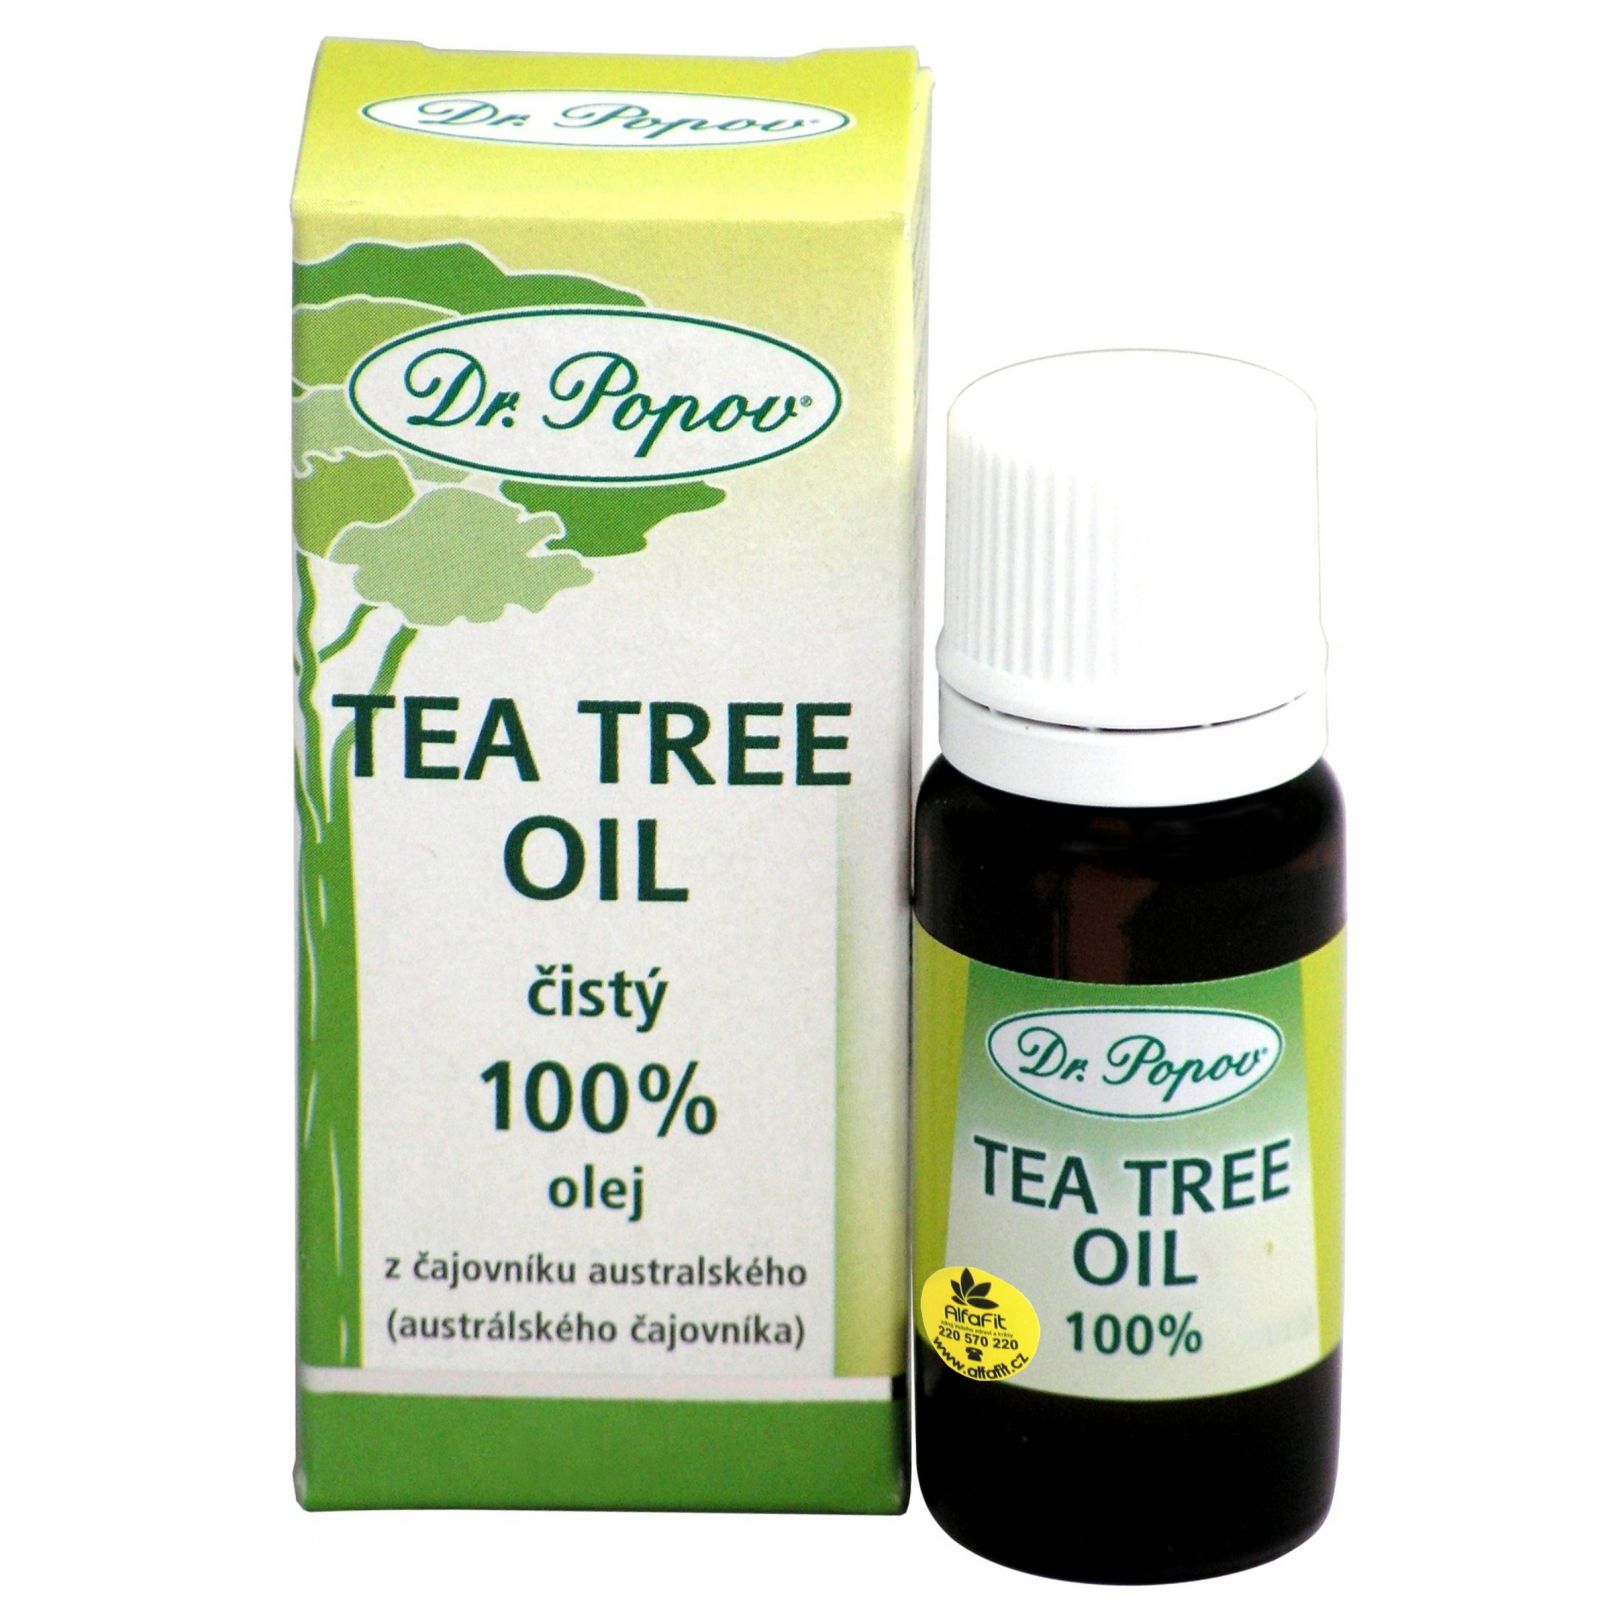 Dr. Popov Tea tree oil 25 ml